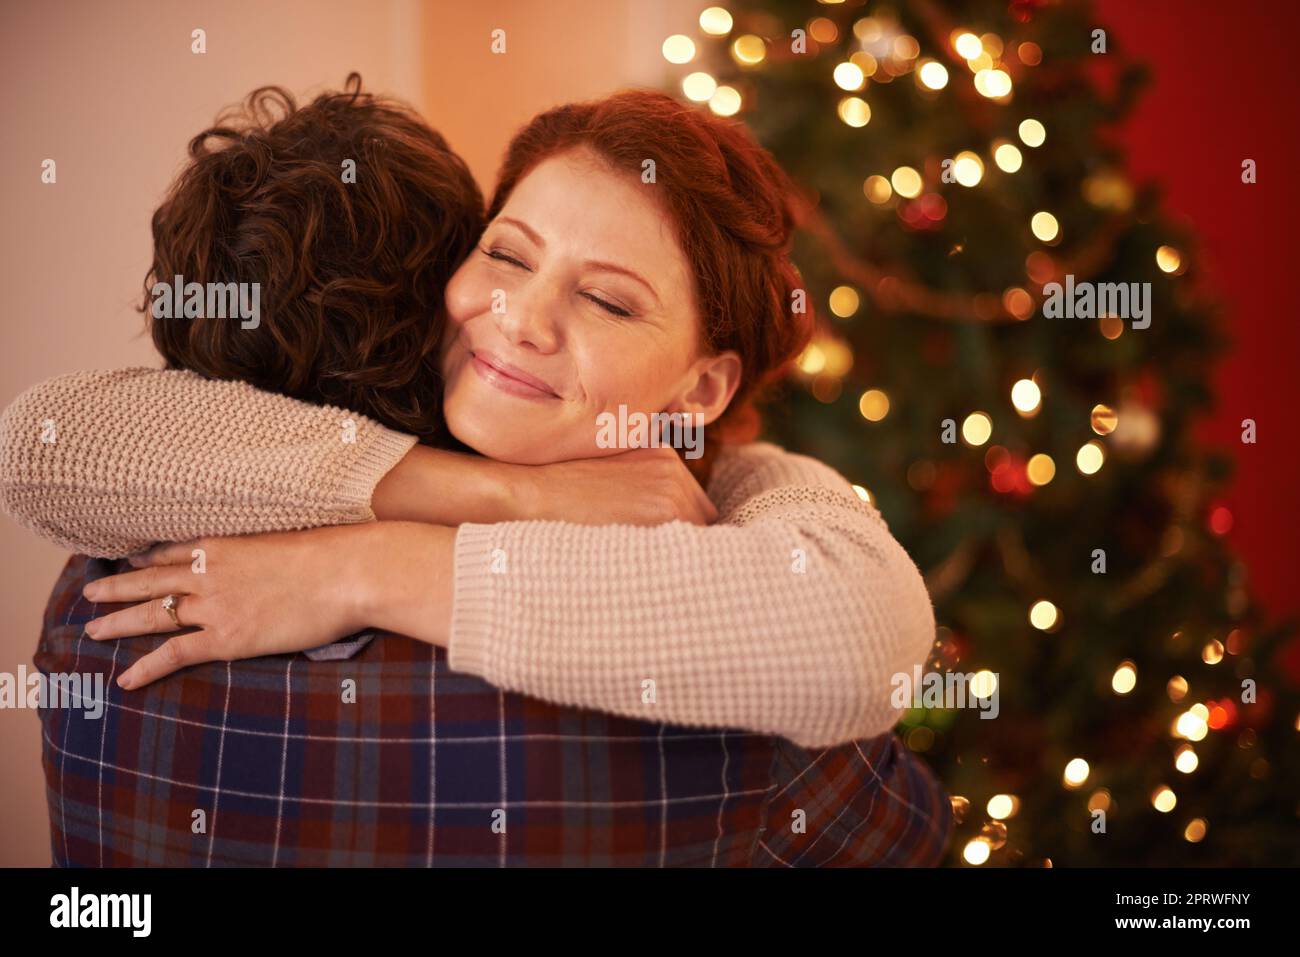 Christmas hug. an affectionate young couple embracing at Christmas time. Stock Photo